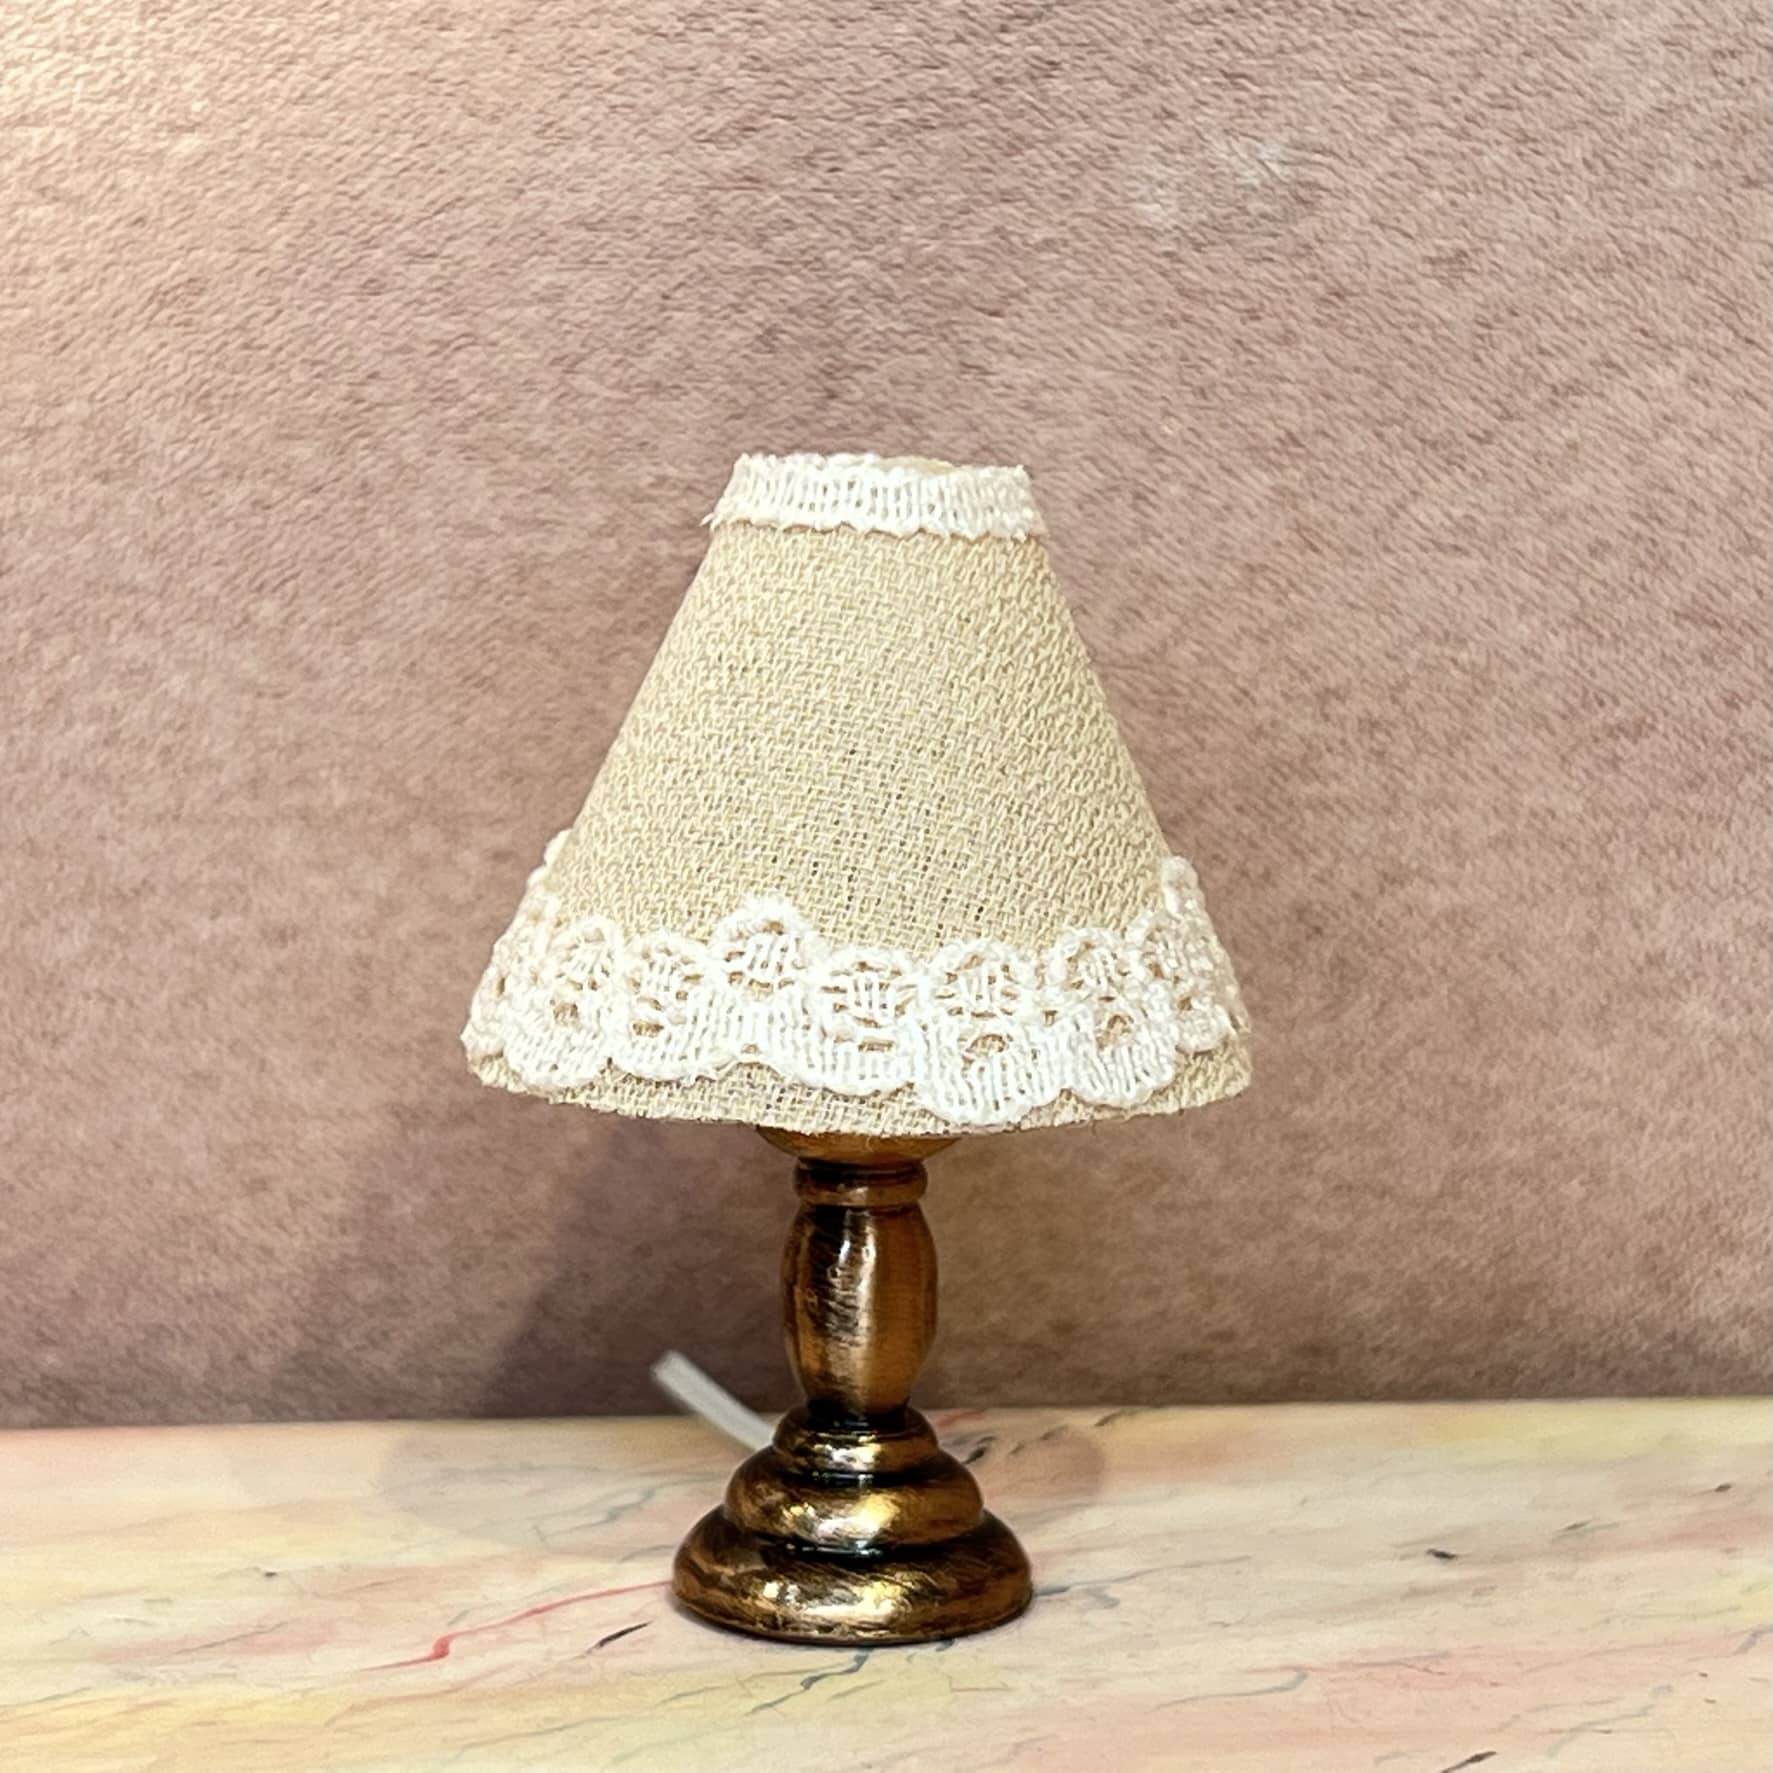 århundrede G pilfer Lille dukkehus lampe - Lille miniature dukkehus bordlampe i kobber